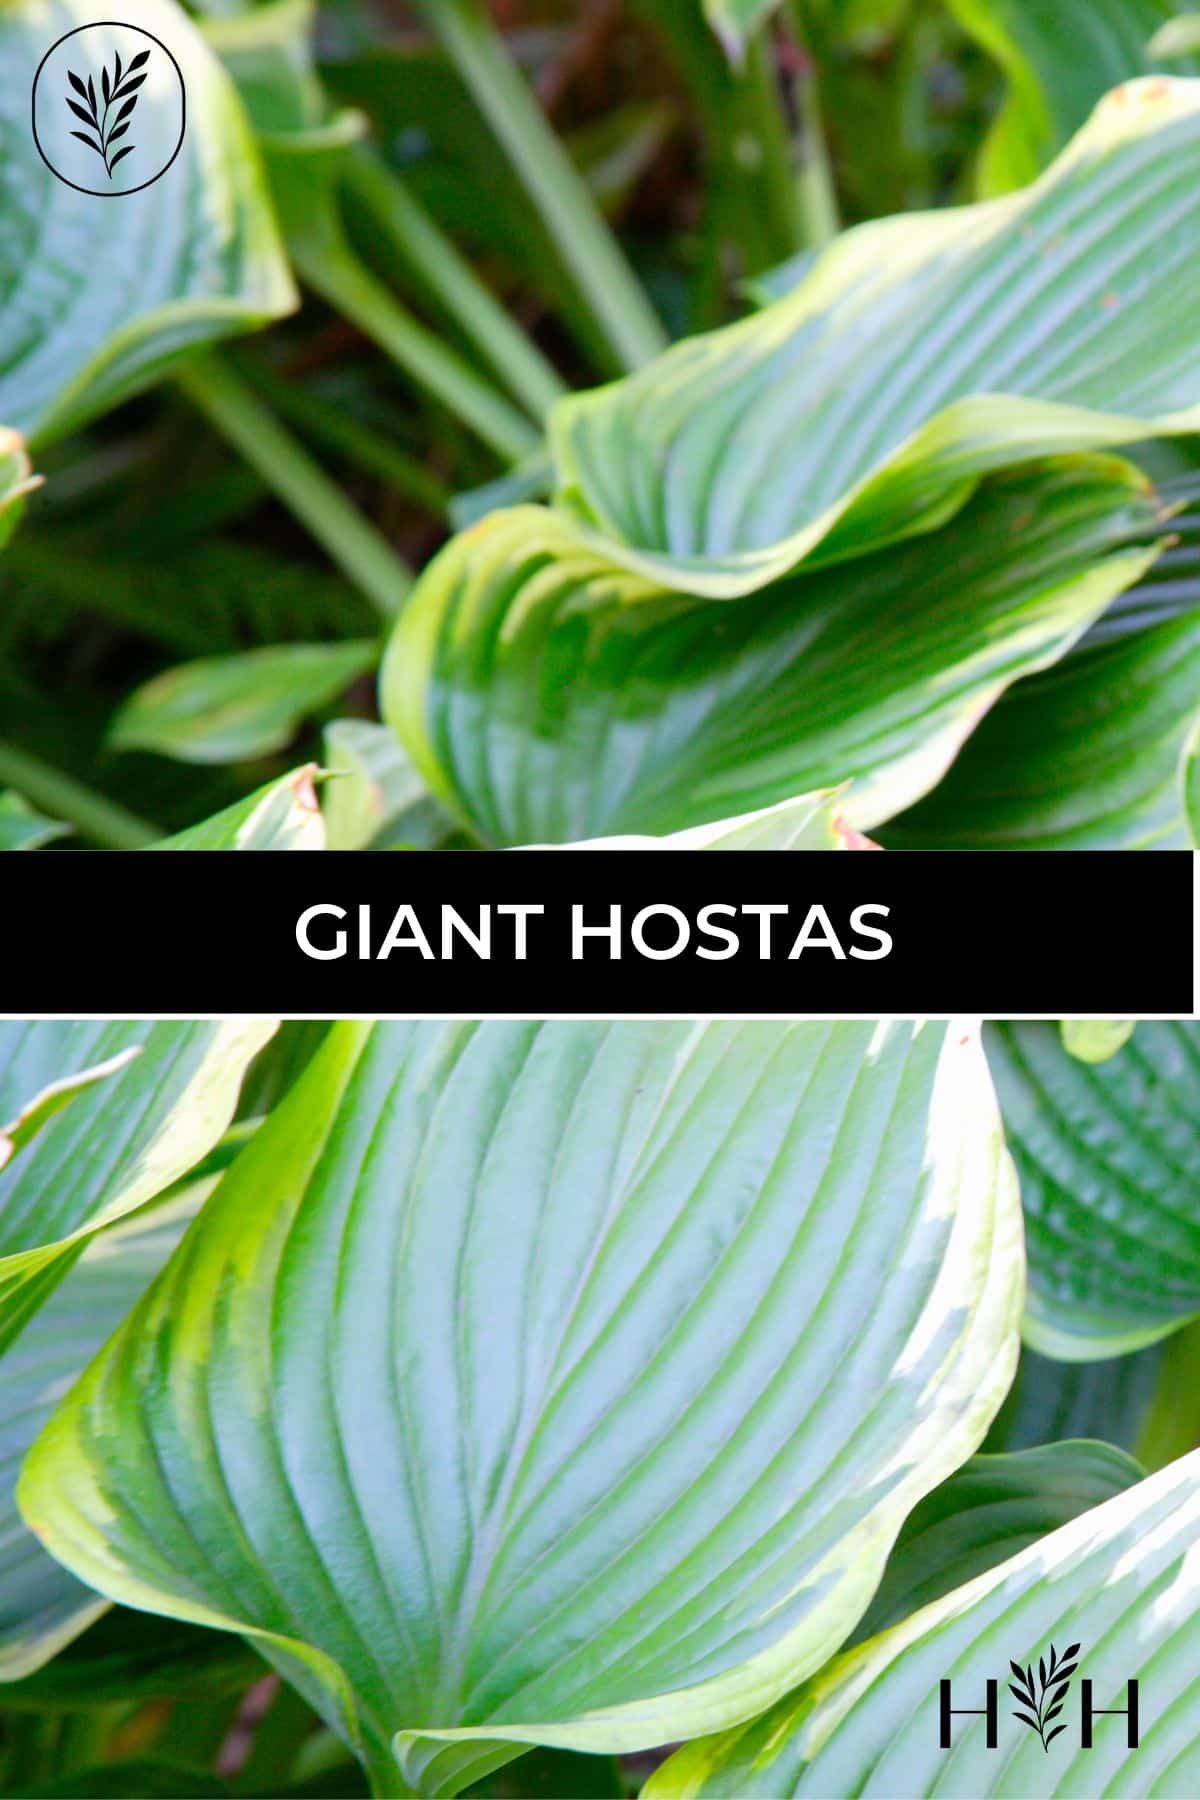 Giant hostas via @home4theharvest